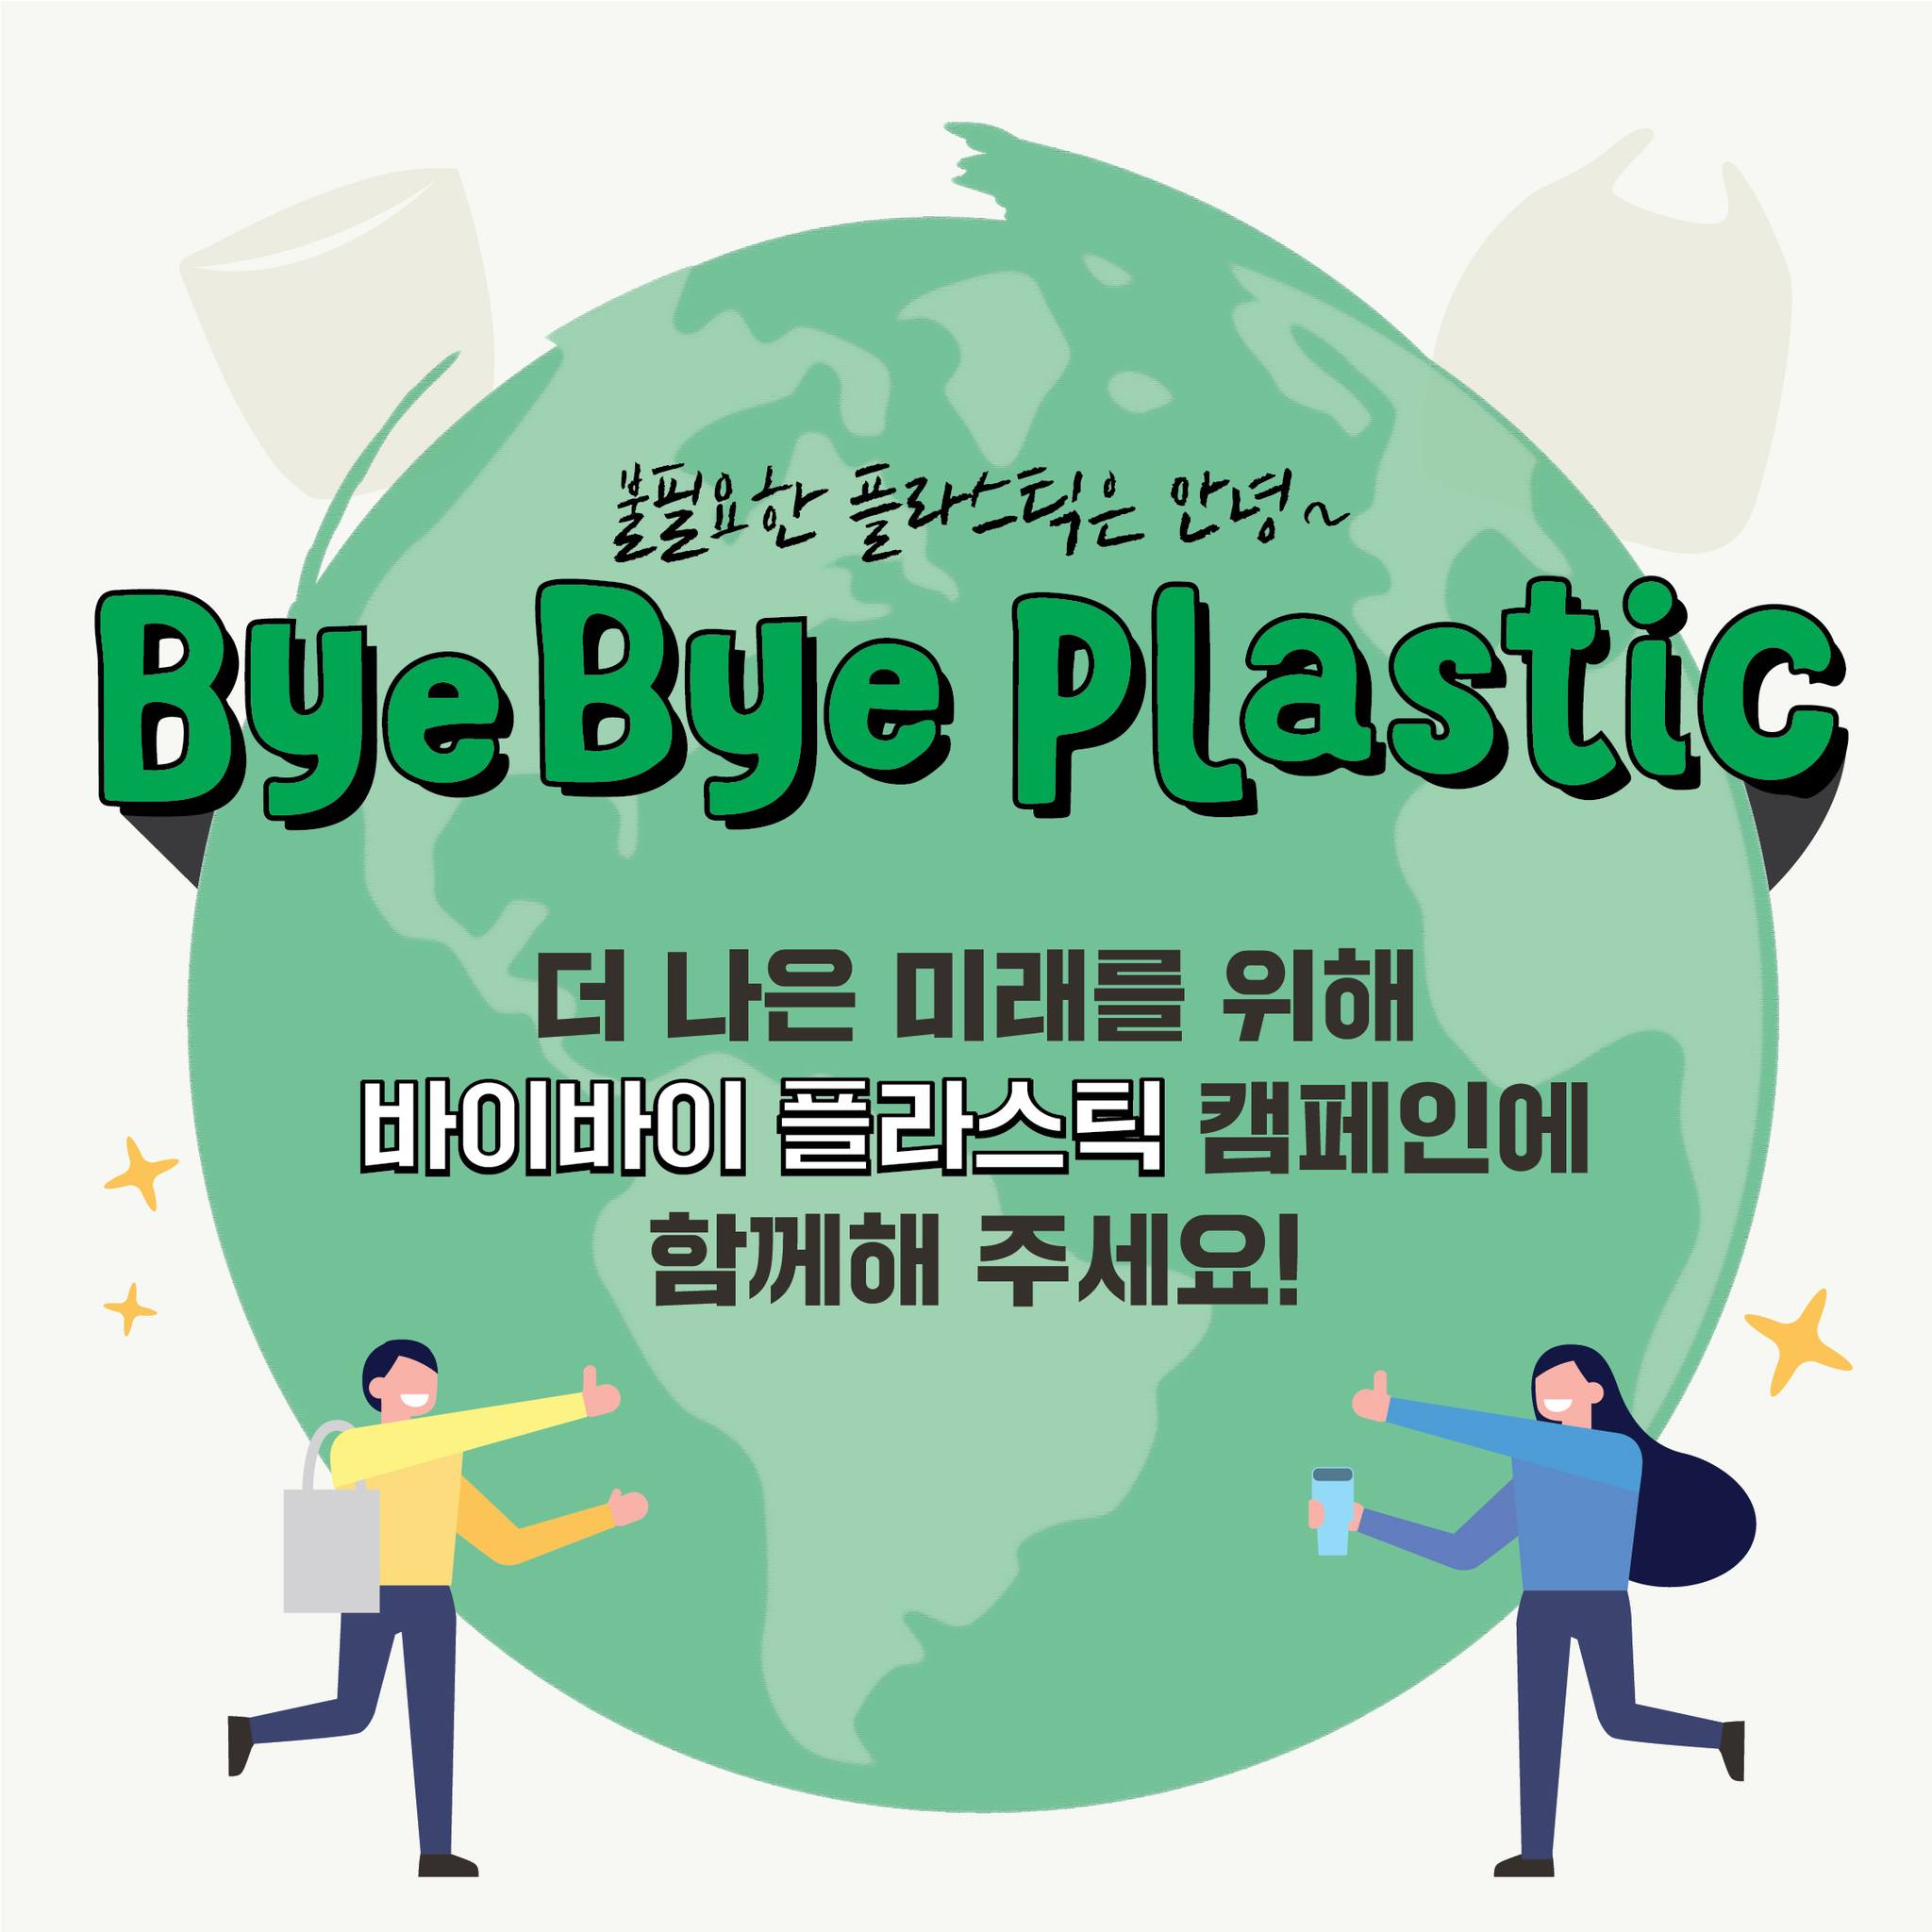 불필요한 플라스틱은 안녕~
Bye Bye Plastic
더 나은 미래를 위해 바이바이 플라스틱 캠페인에 함께해 주세요!